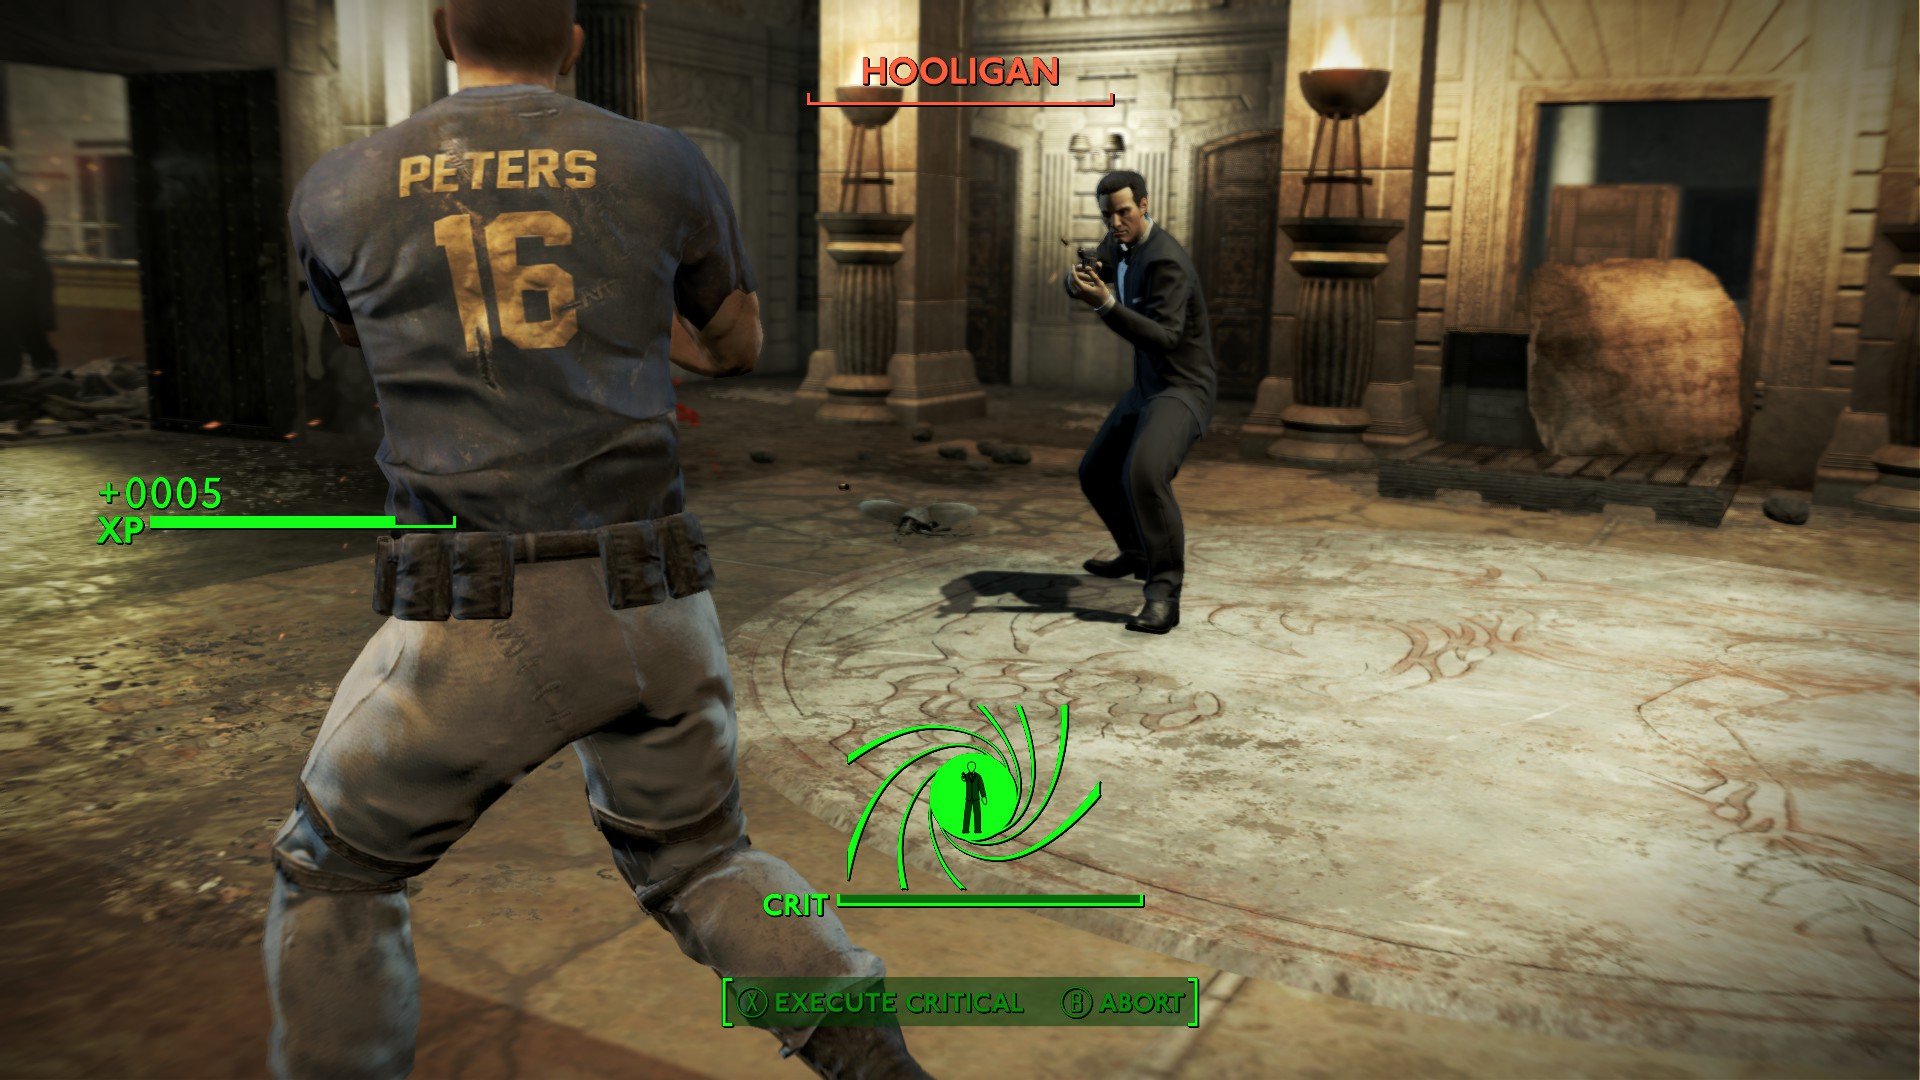 Test de Fallout London : gameplay de Fallout London montrant le mystérieux étranger, déguisé en James Bond, tirant sur un Holigan portant un équipement de football.